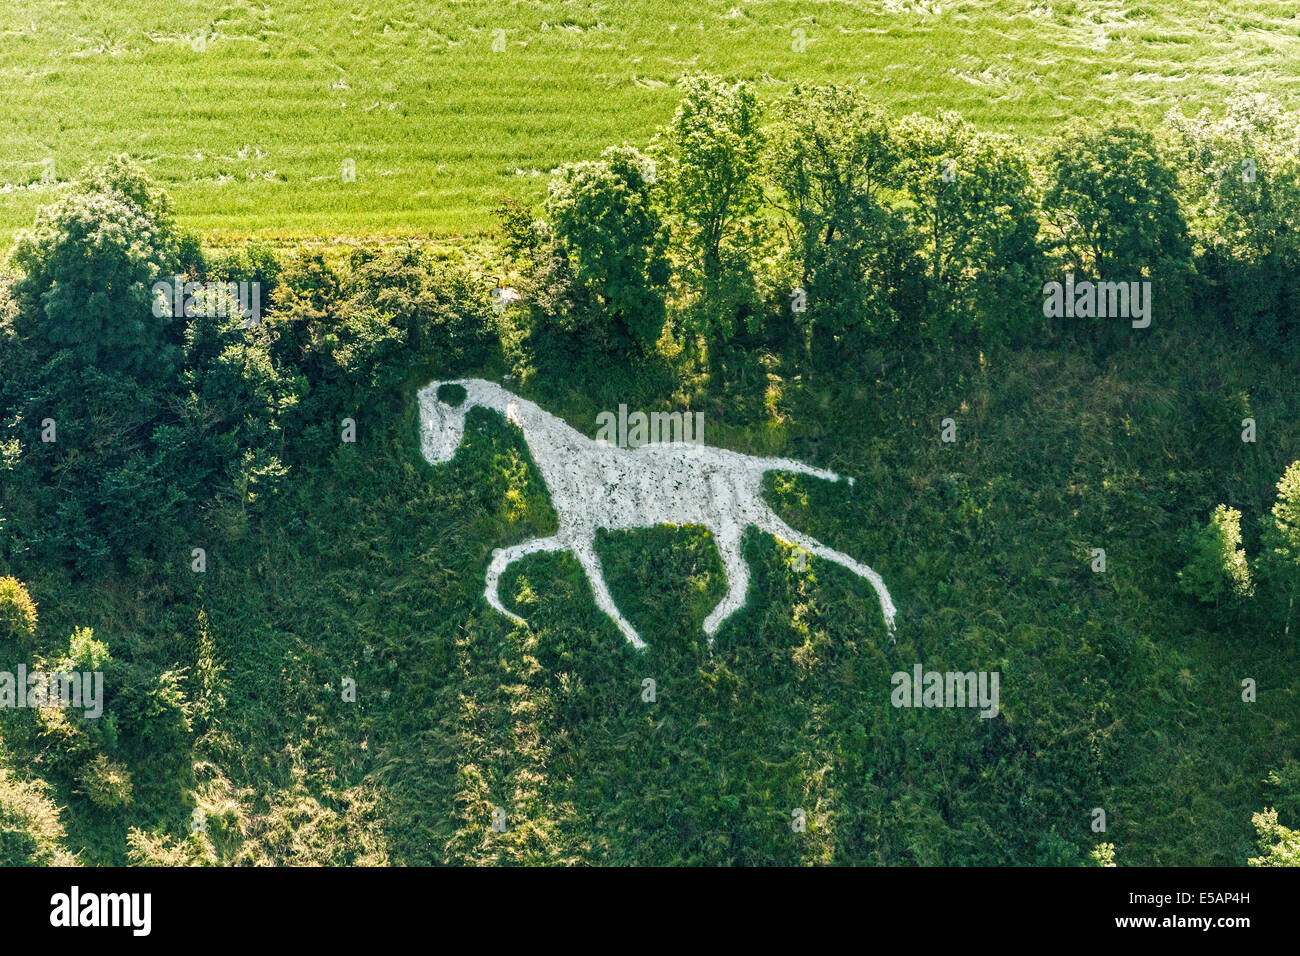 Vista aerea del Cavallo Bianco in grandi città o ampia Hinton, nr Royal Wootton Bassett, a sud di Swindon, Wiltshire, Regno Unito. JMH6171 Foto Stock